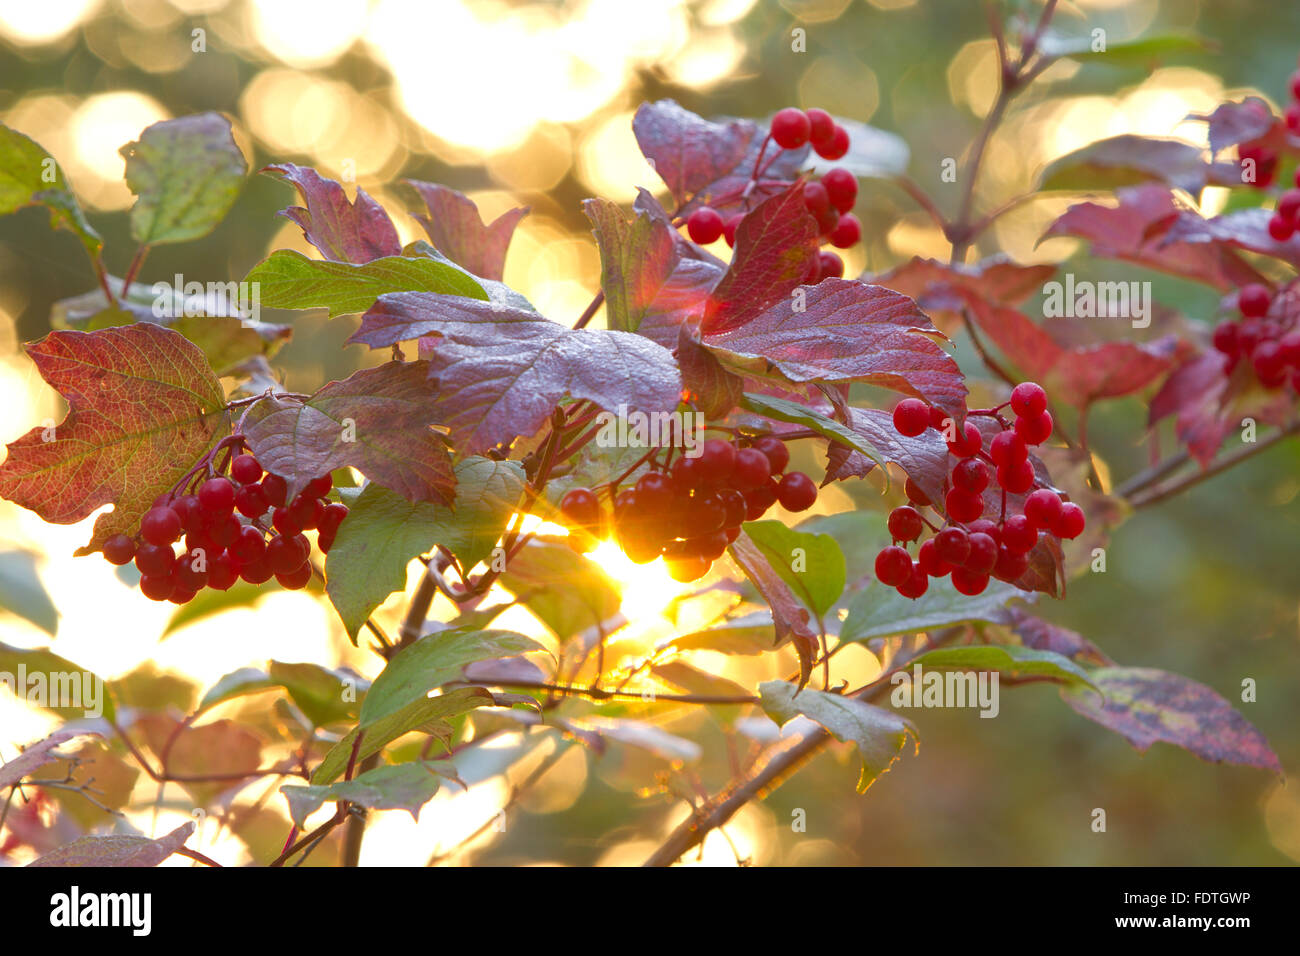 Guelder Rose (Viburnum opulus) du soleil si un arbre avec des fruits mûrs en automne. Powys, Pays de Galles. Octobre. Banque D'Images